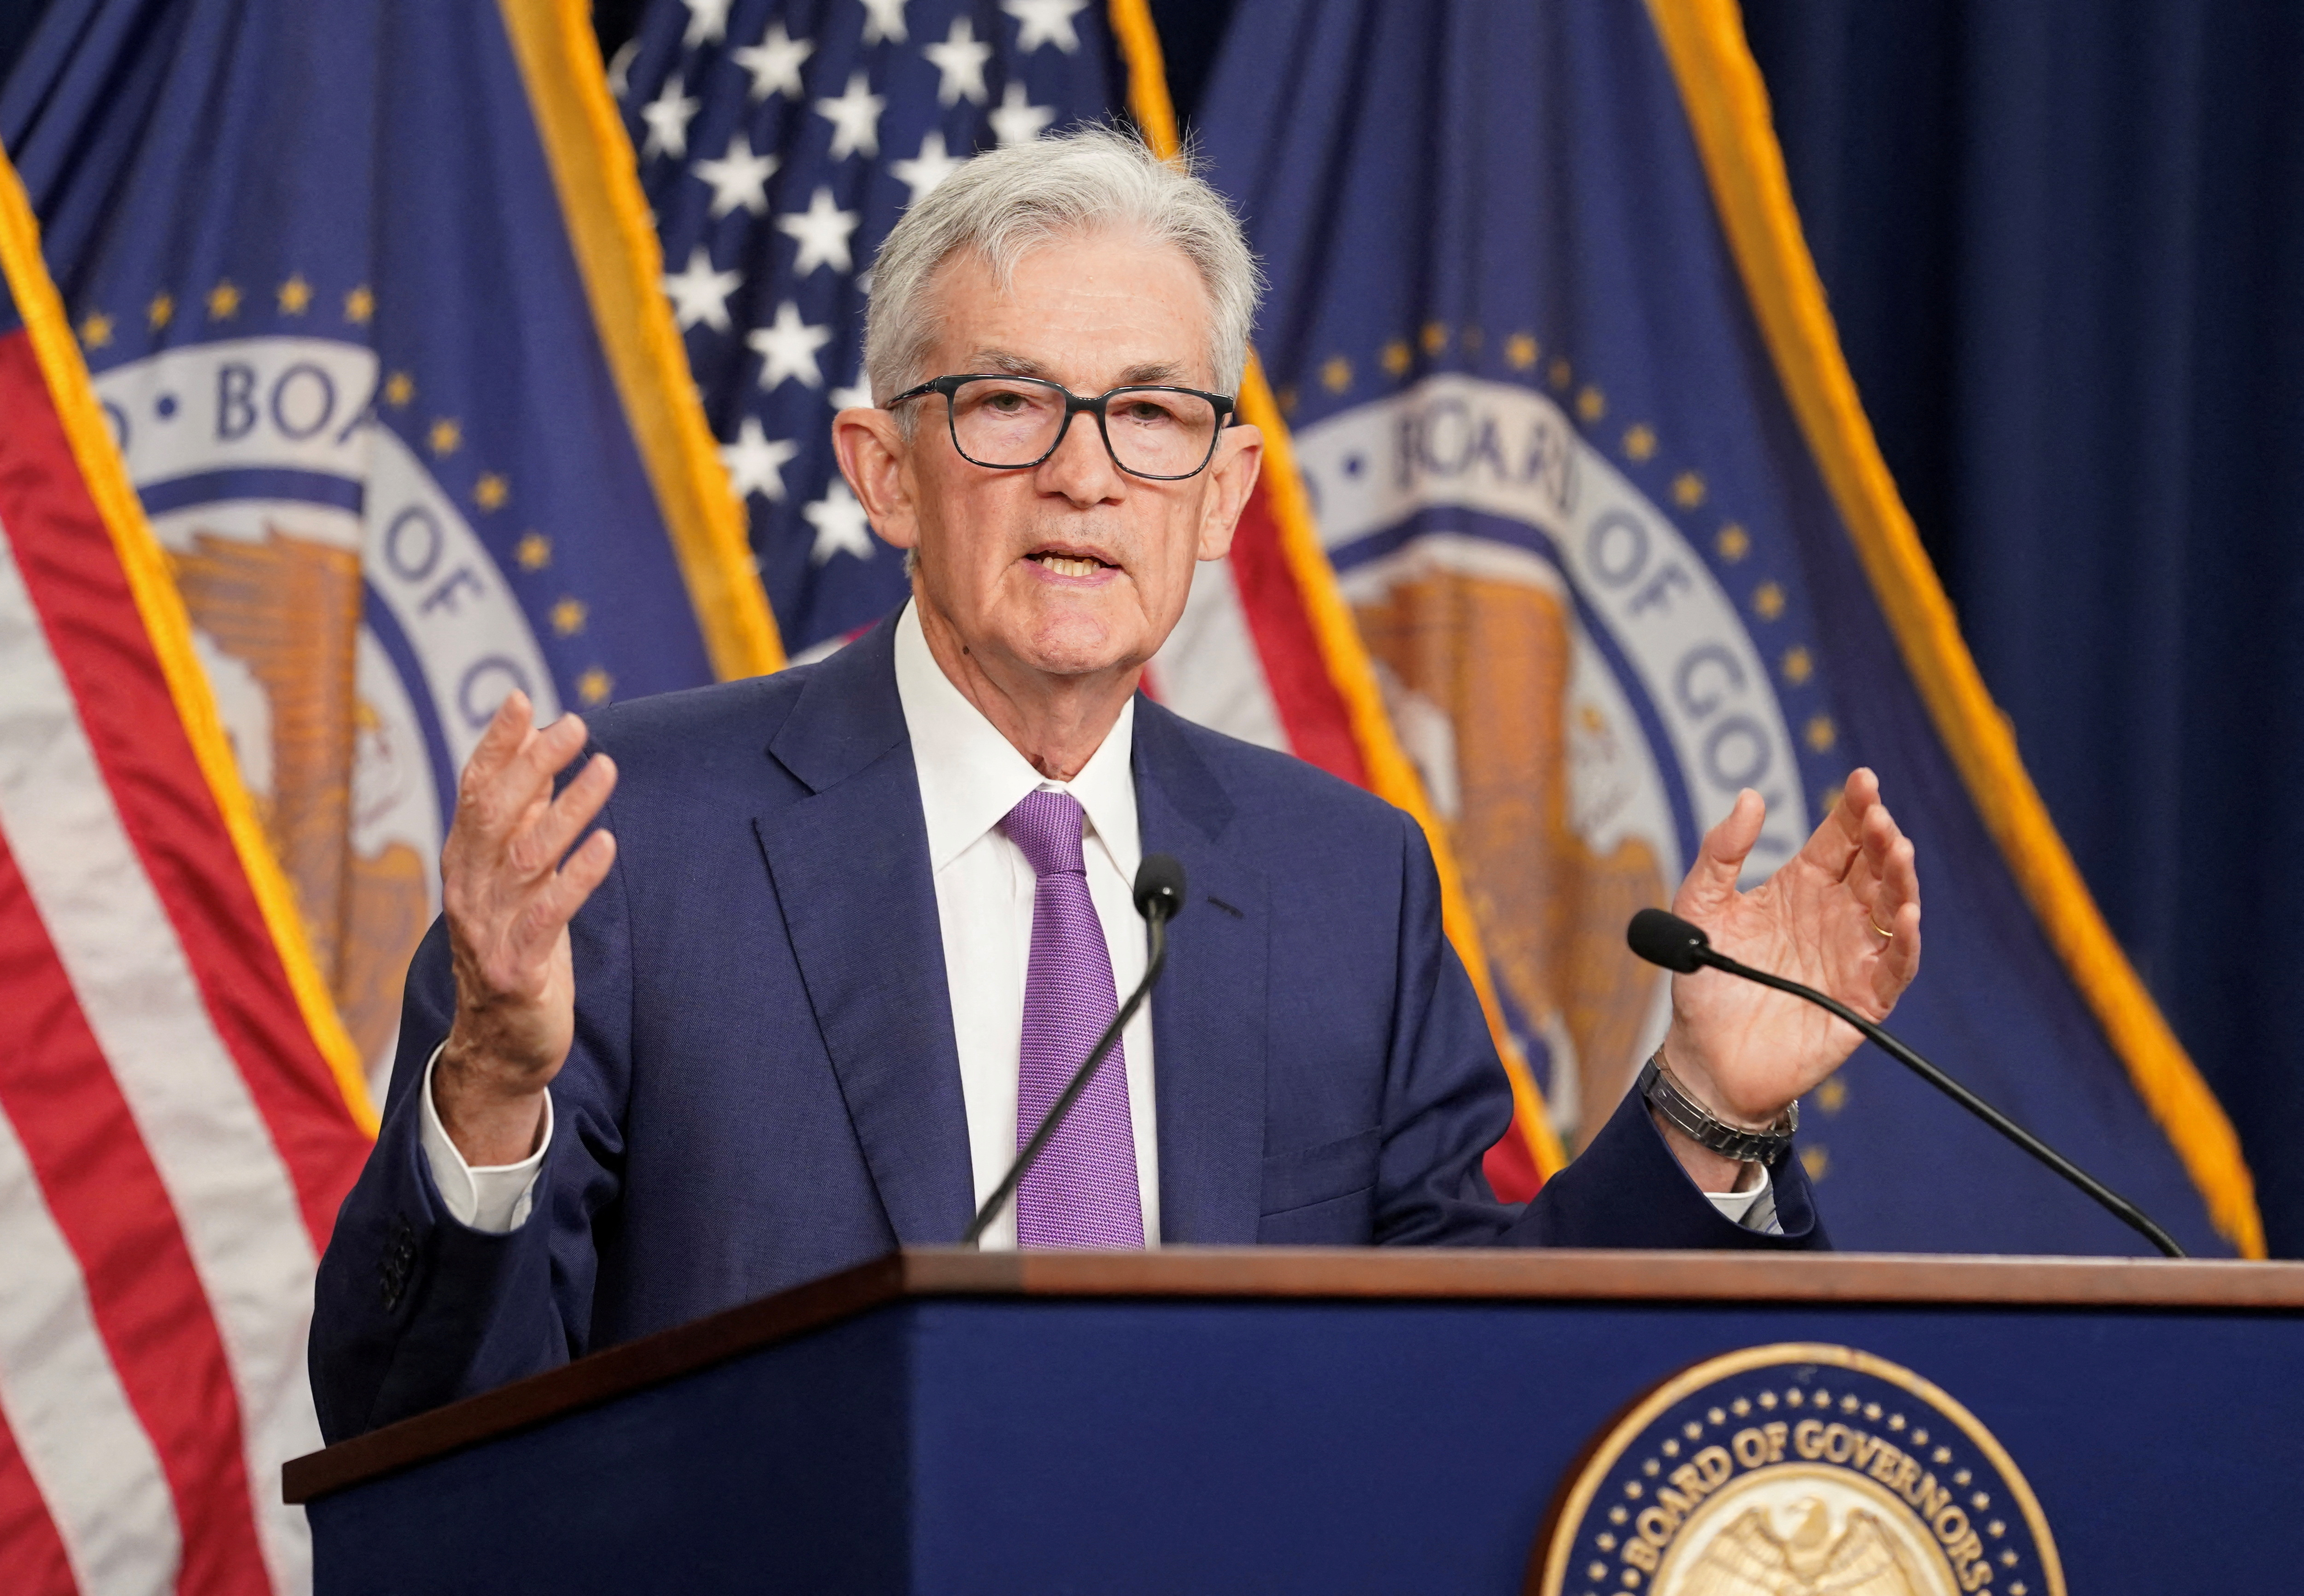 Taux : aux Etats-Unis, la Fed doit rester inflexible sur sa position... pour le moment